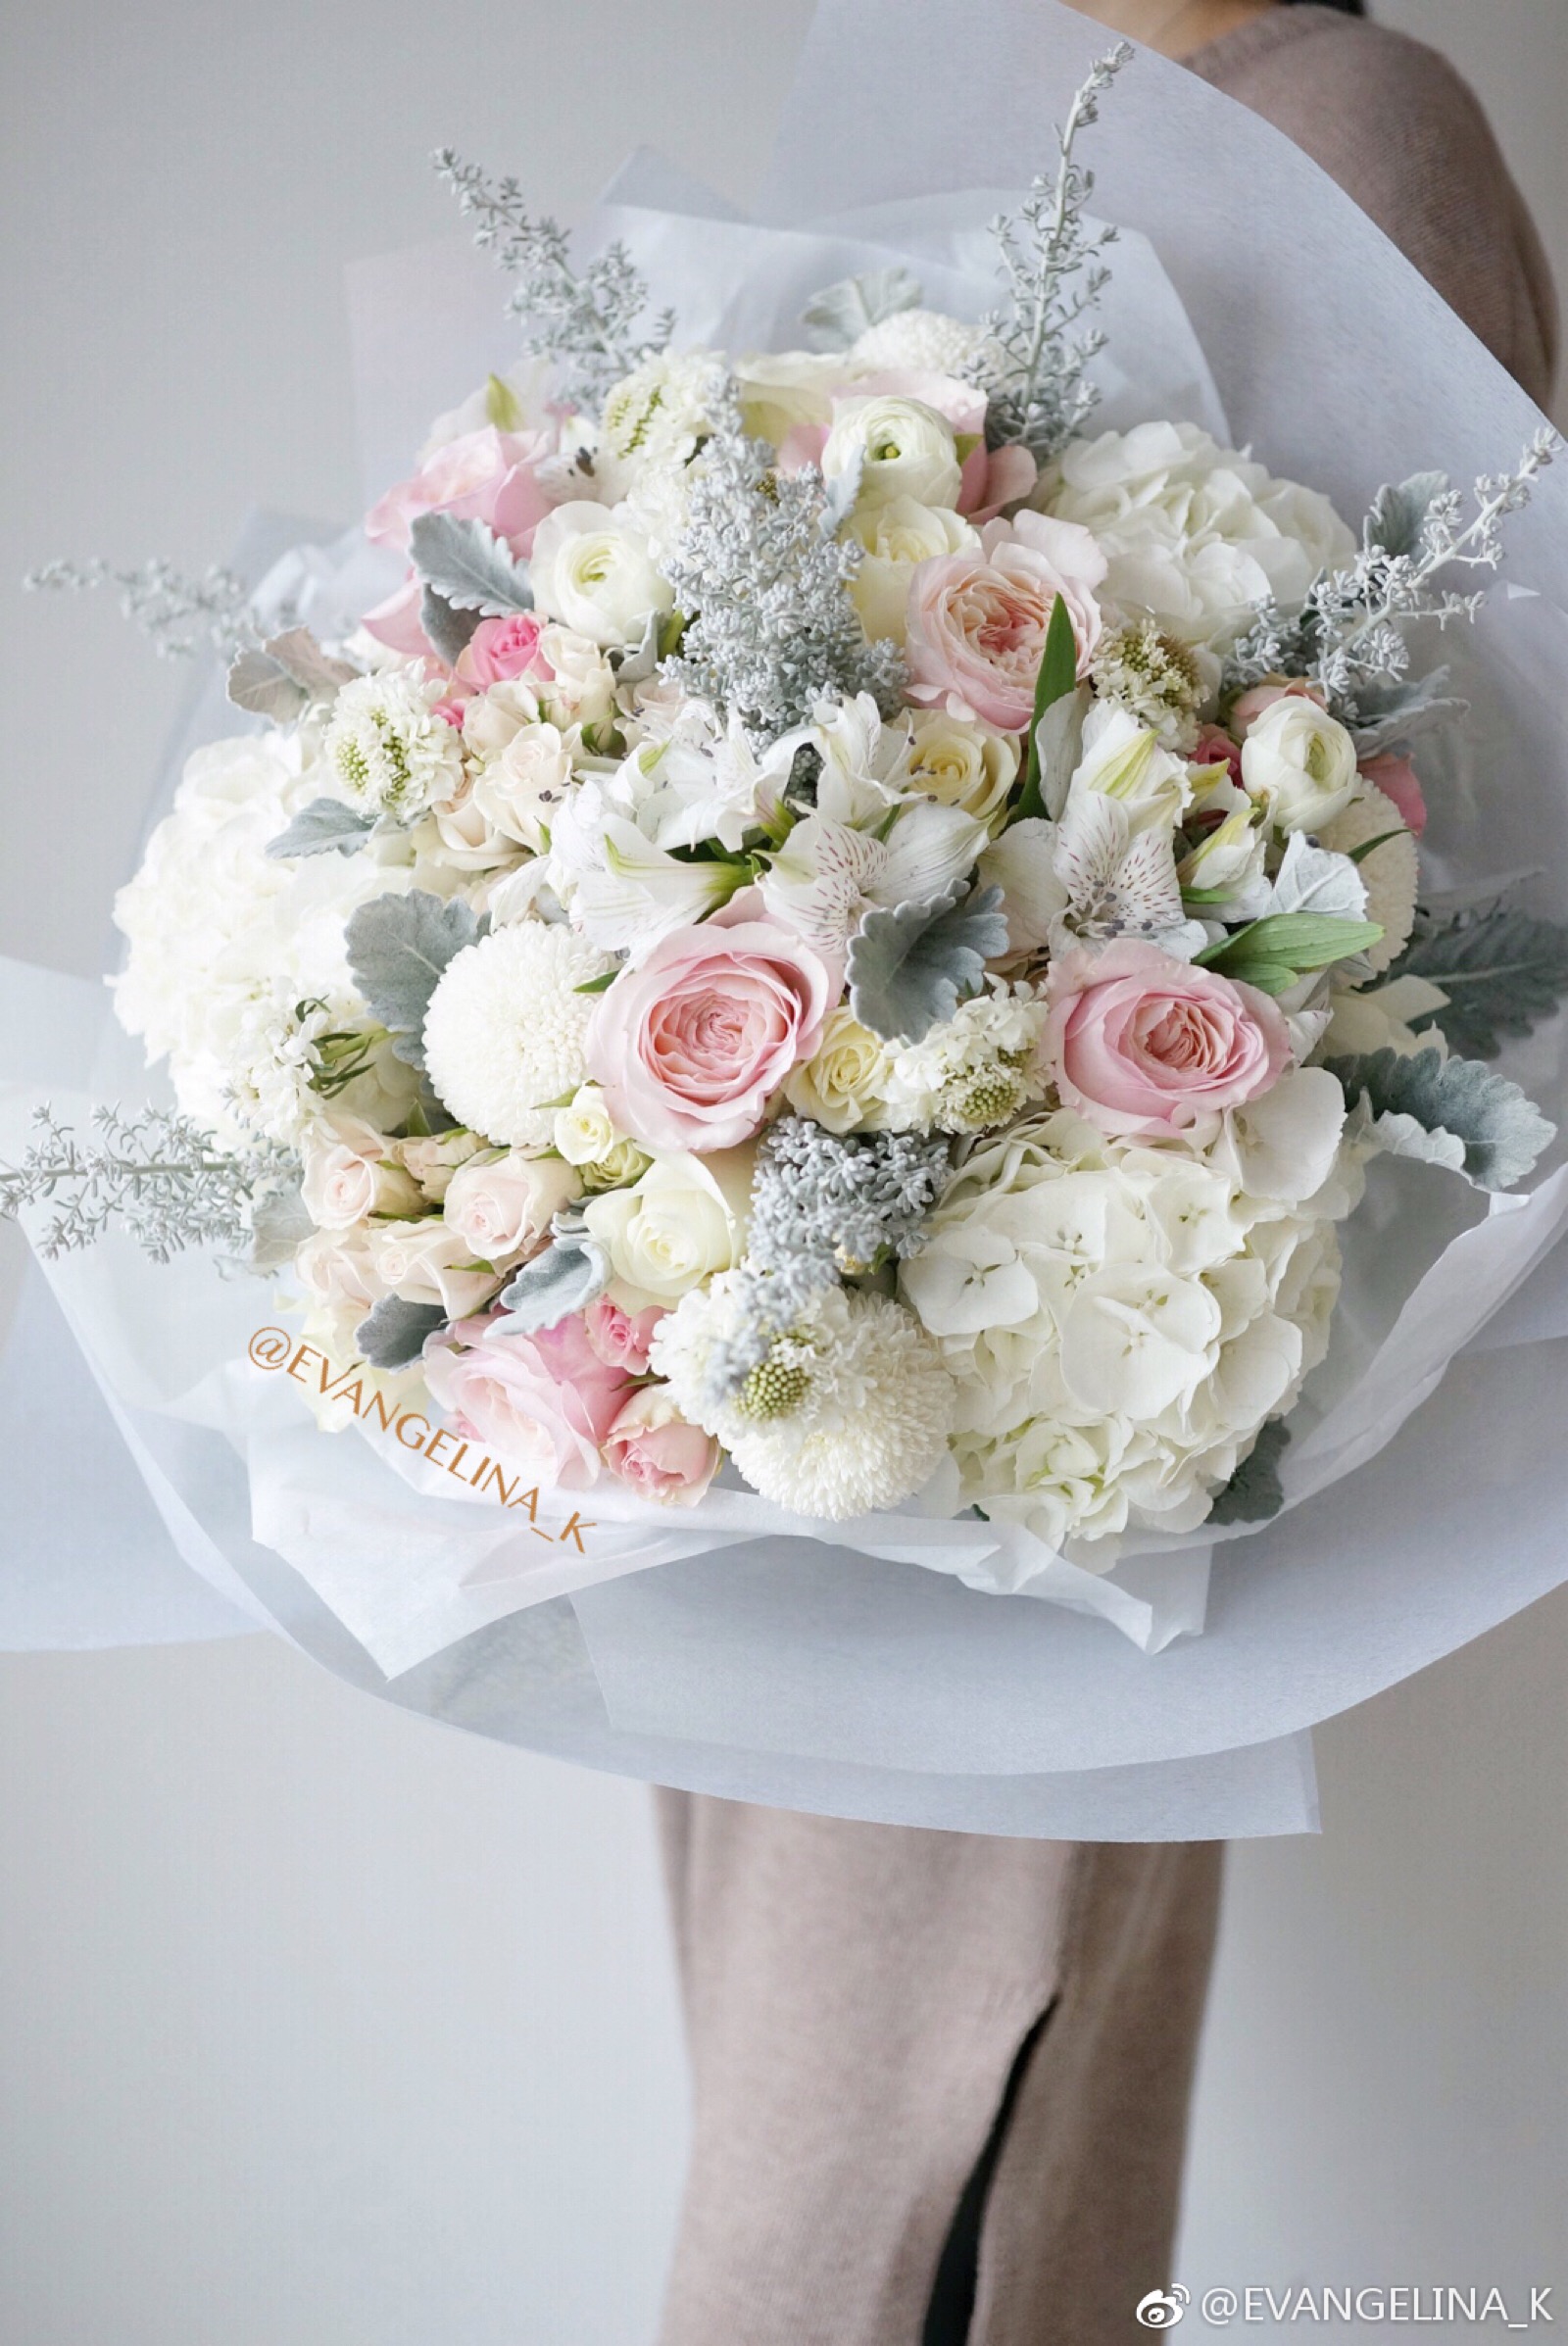 高清晰美丽的白玫瑰花束